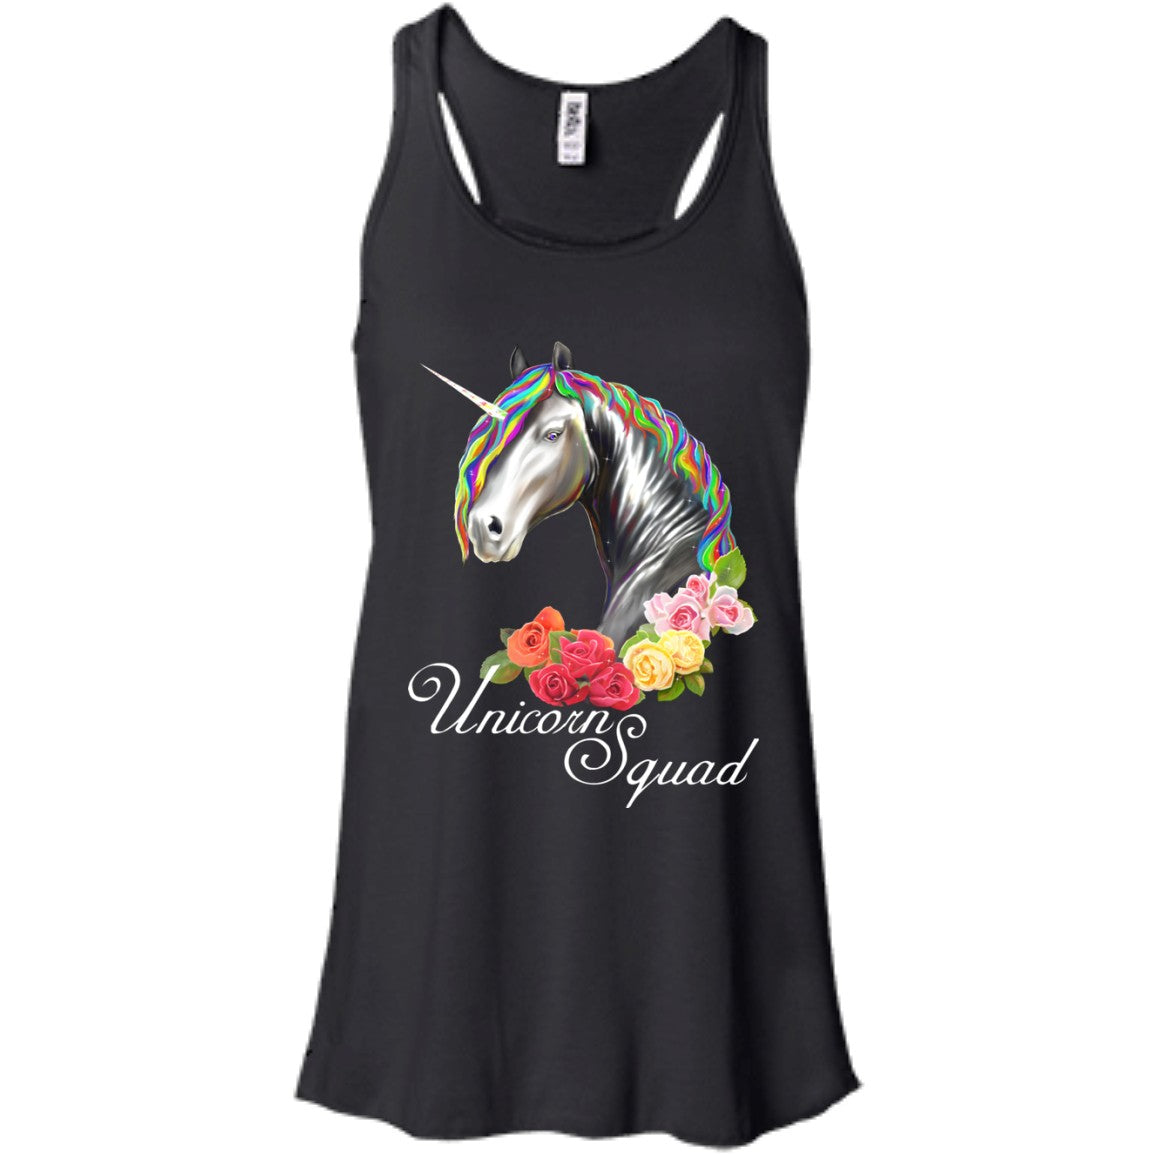 Unicorn Squad Shirt for Women - GoneBold.gift